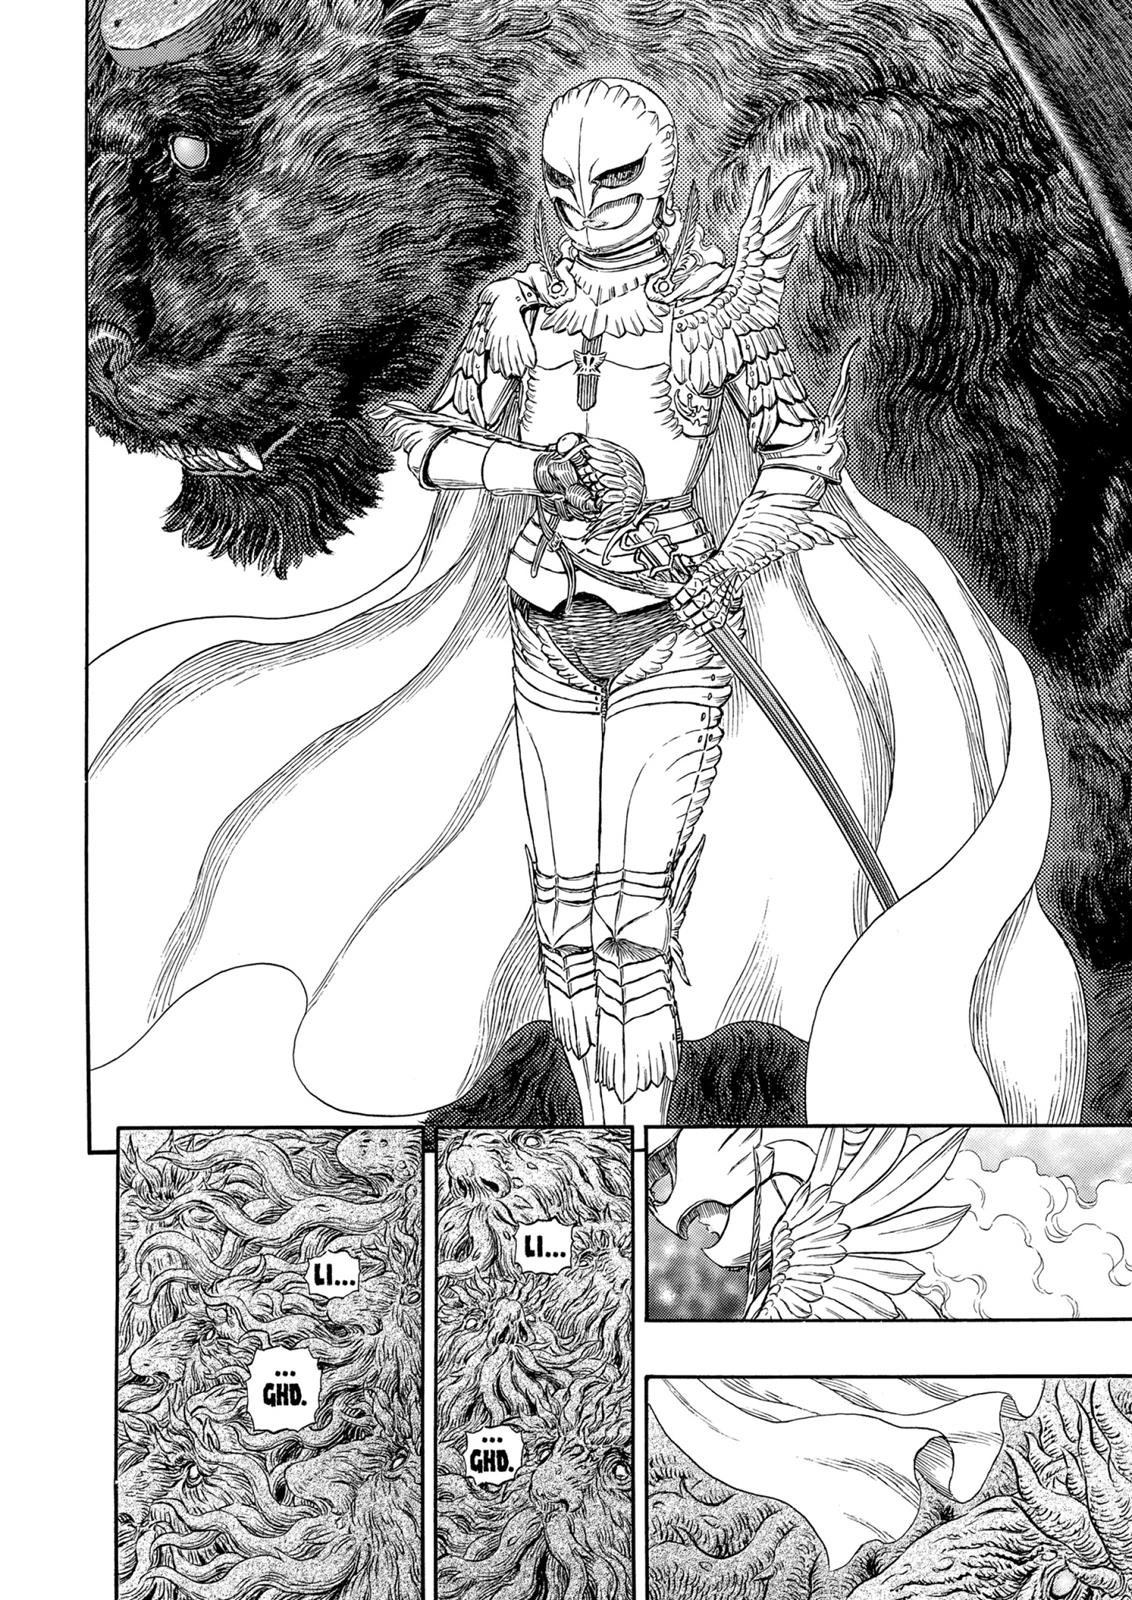 Berserk Manga Chapter 302 image 13